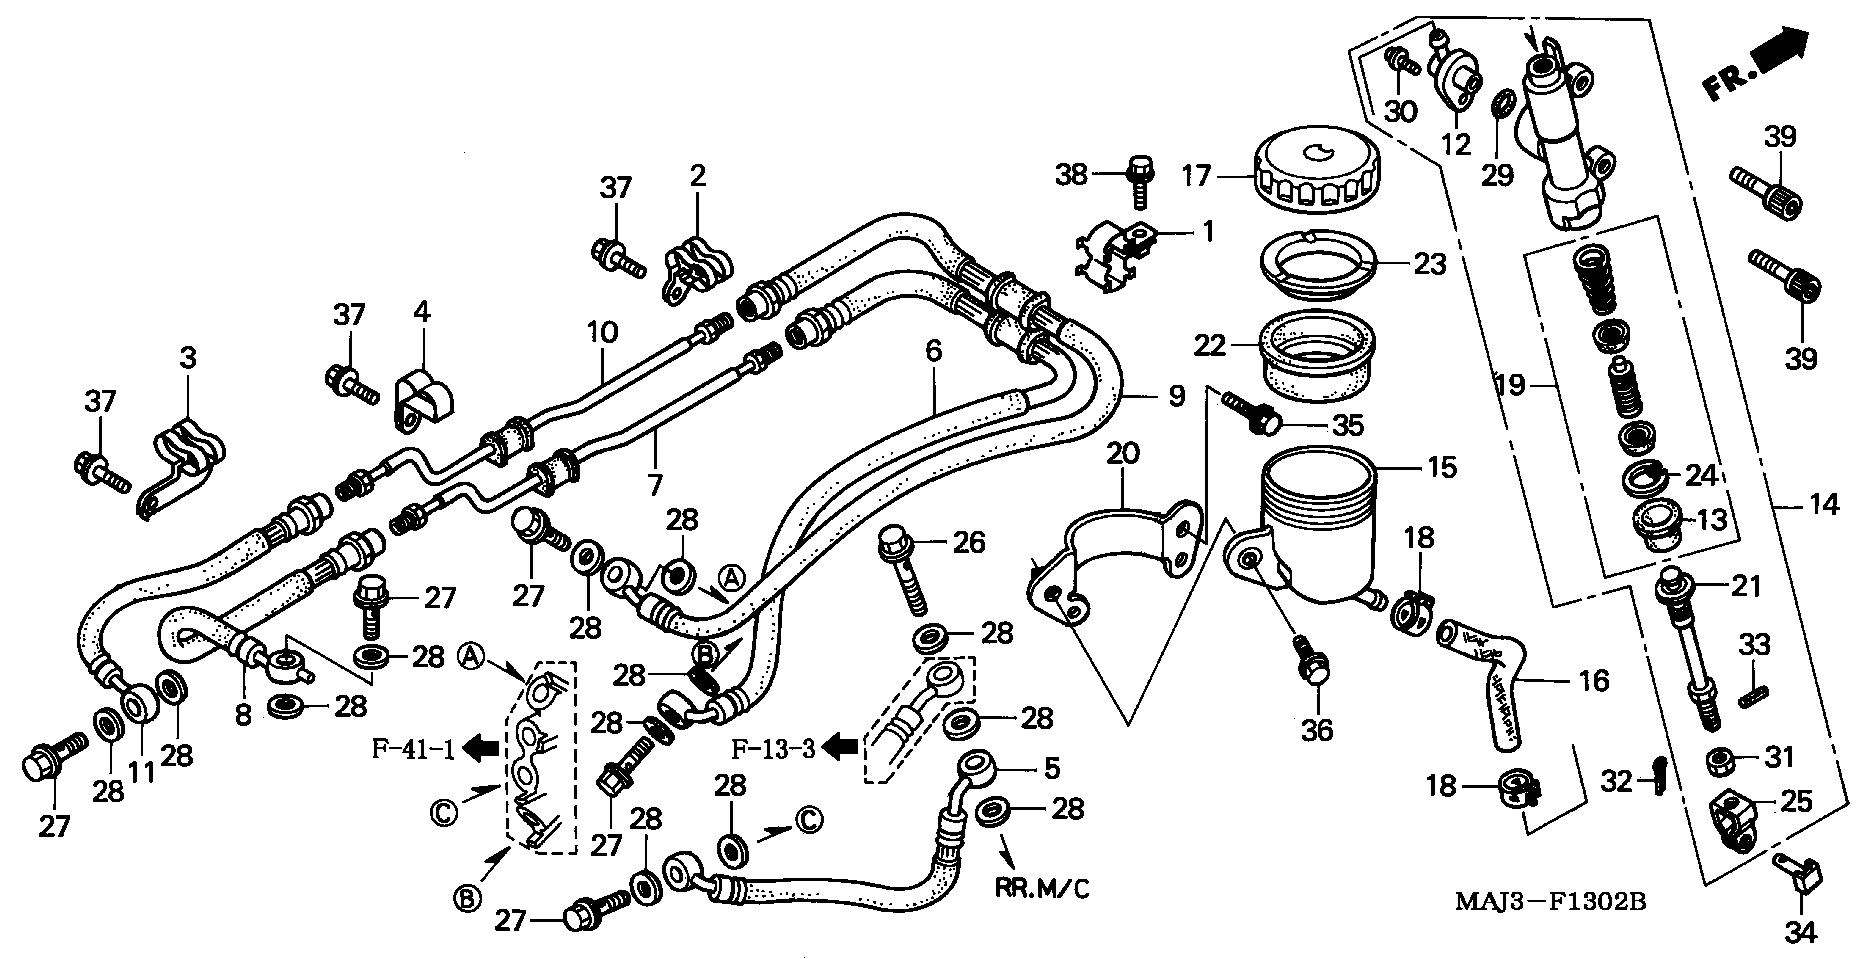 Parts fiche Brake Master Cylinder Rear ST1100